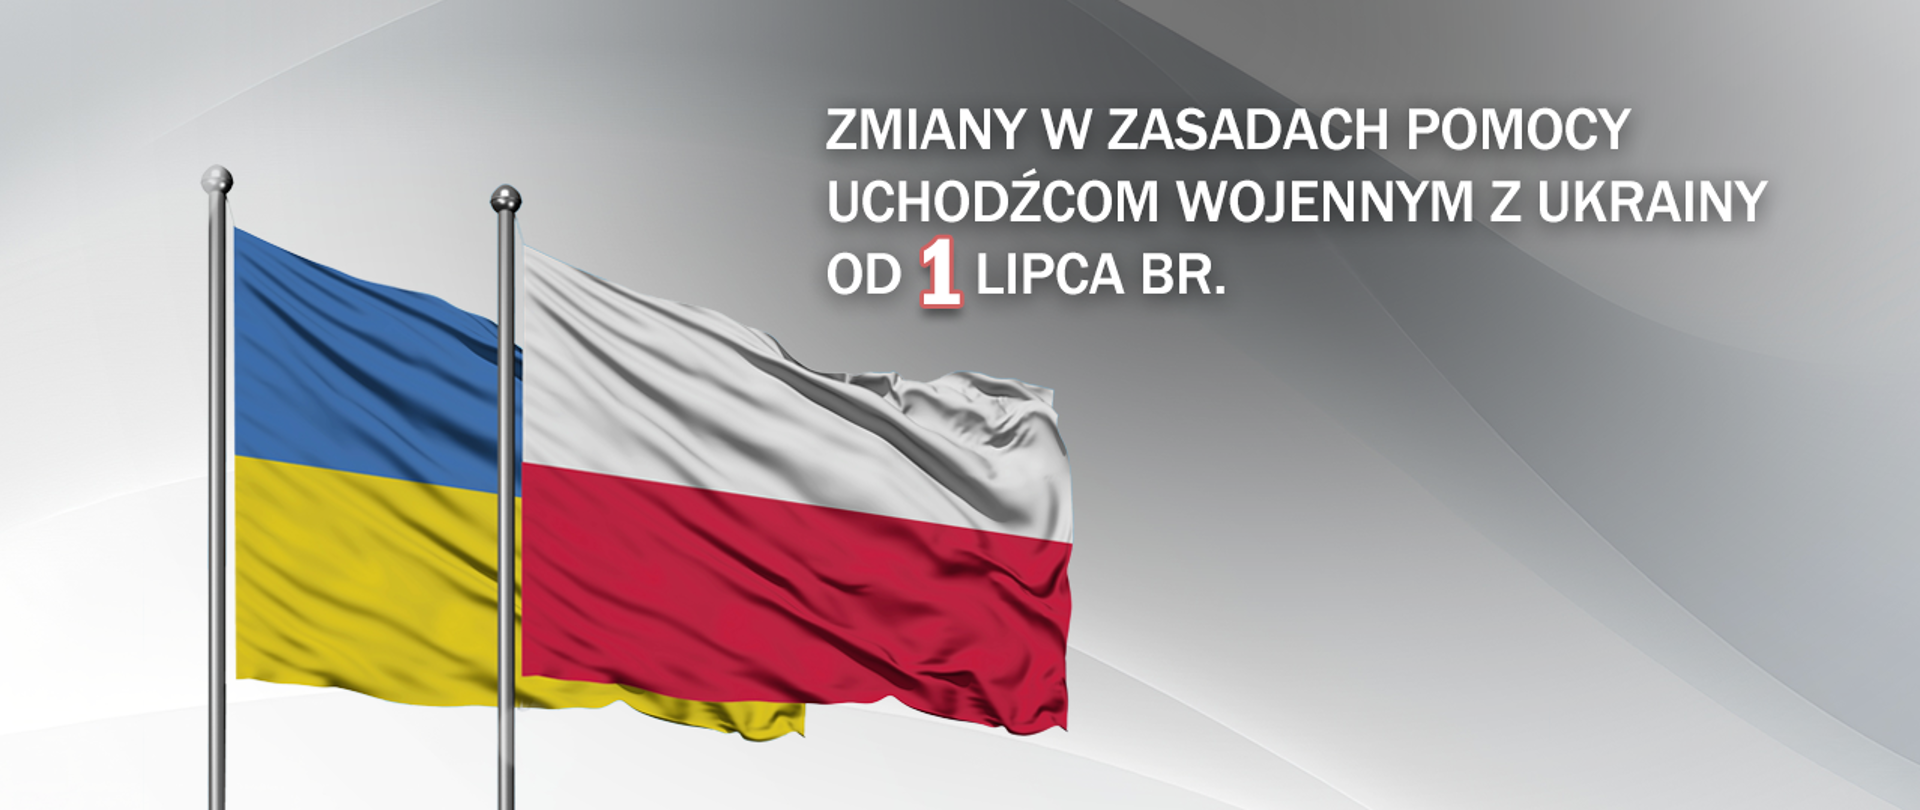 Na szarym tle flagi Polski i Ukrainy oraz napis "Zmiany w zasadach pomocy uchodźcom wojennym z Ukrainy od 1 lipca br"